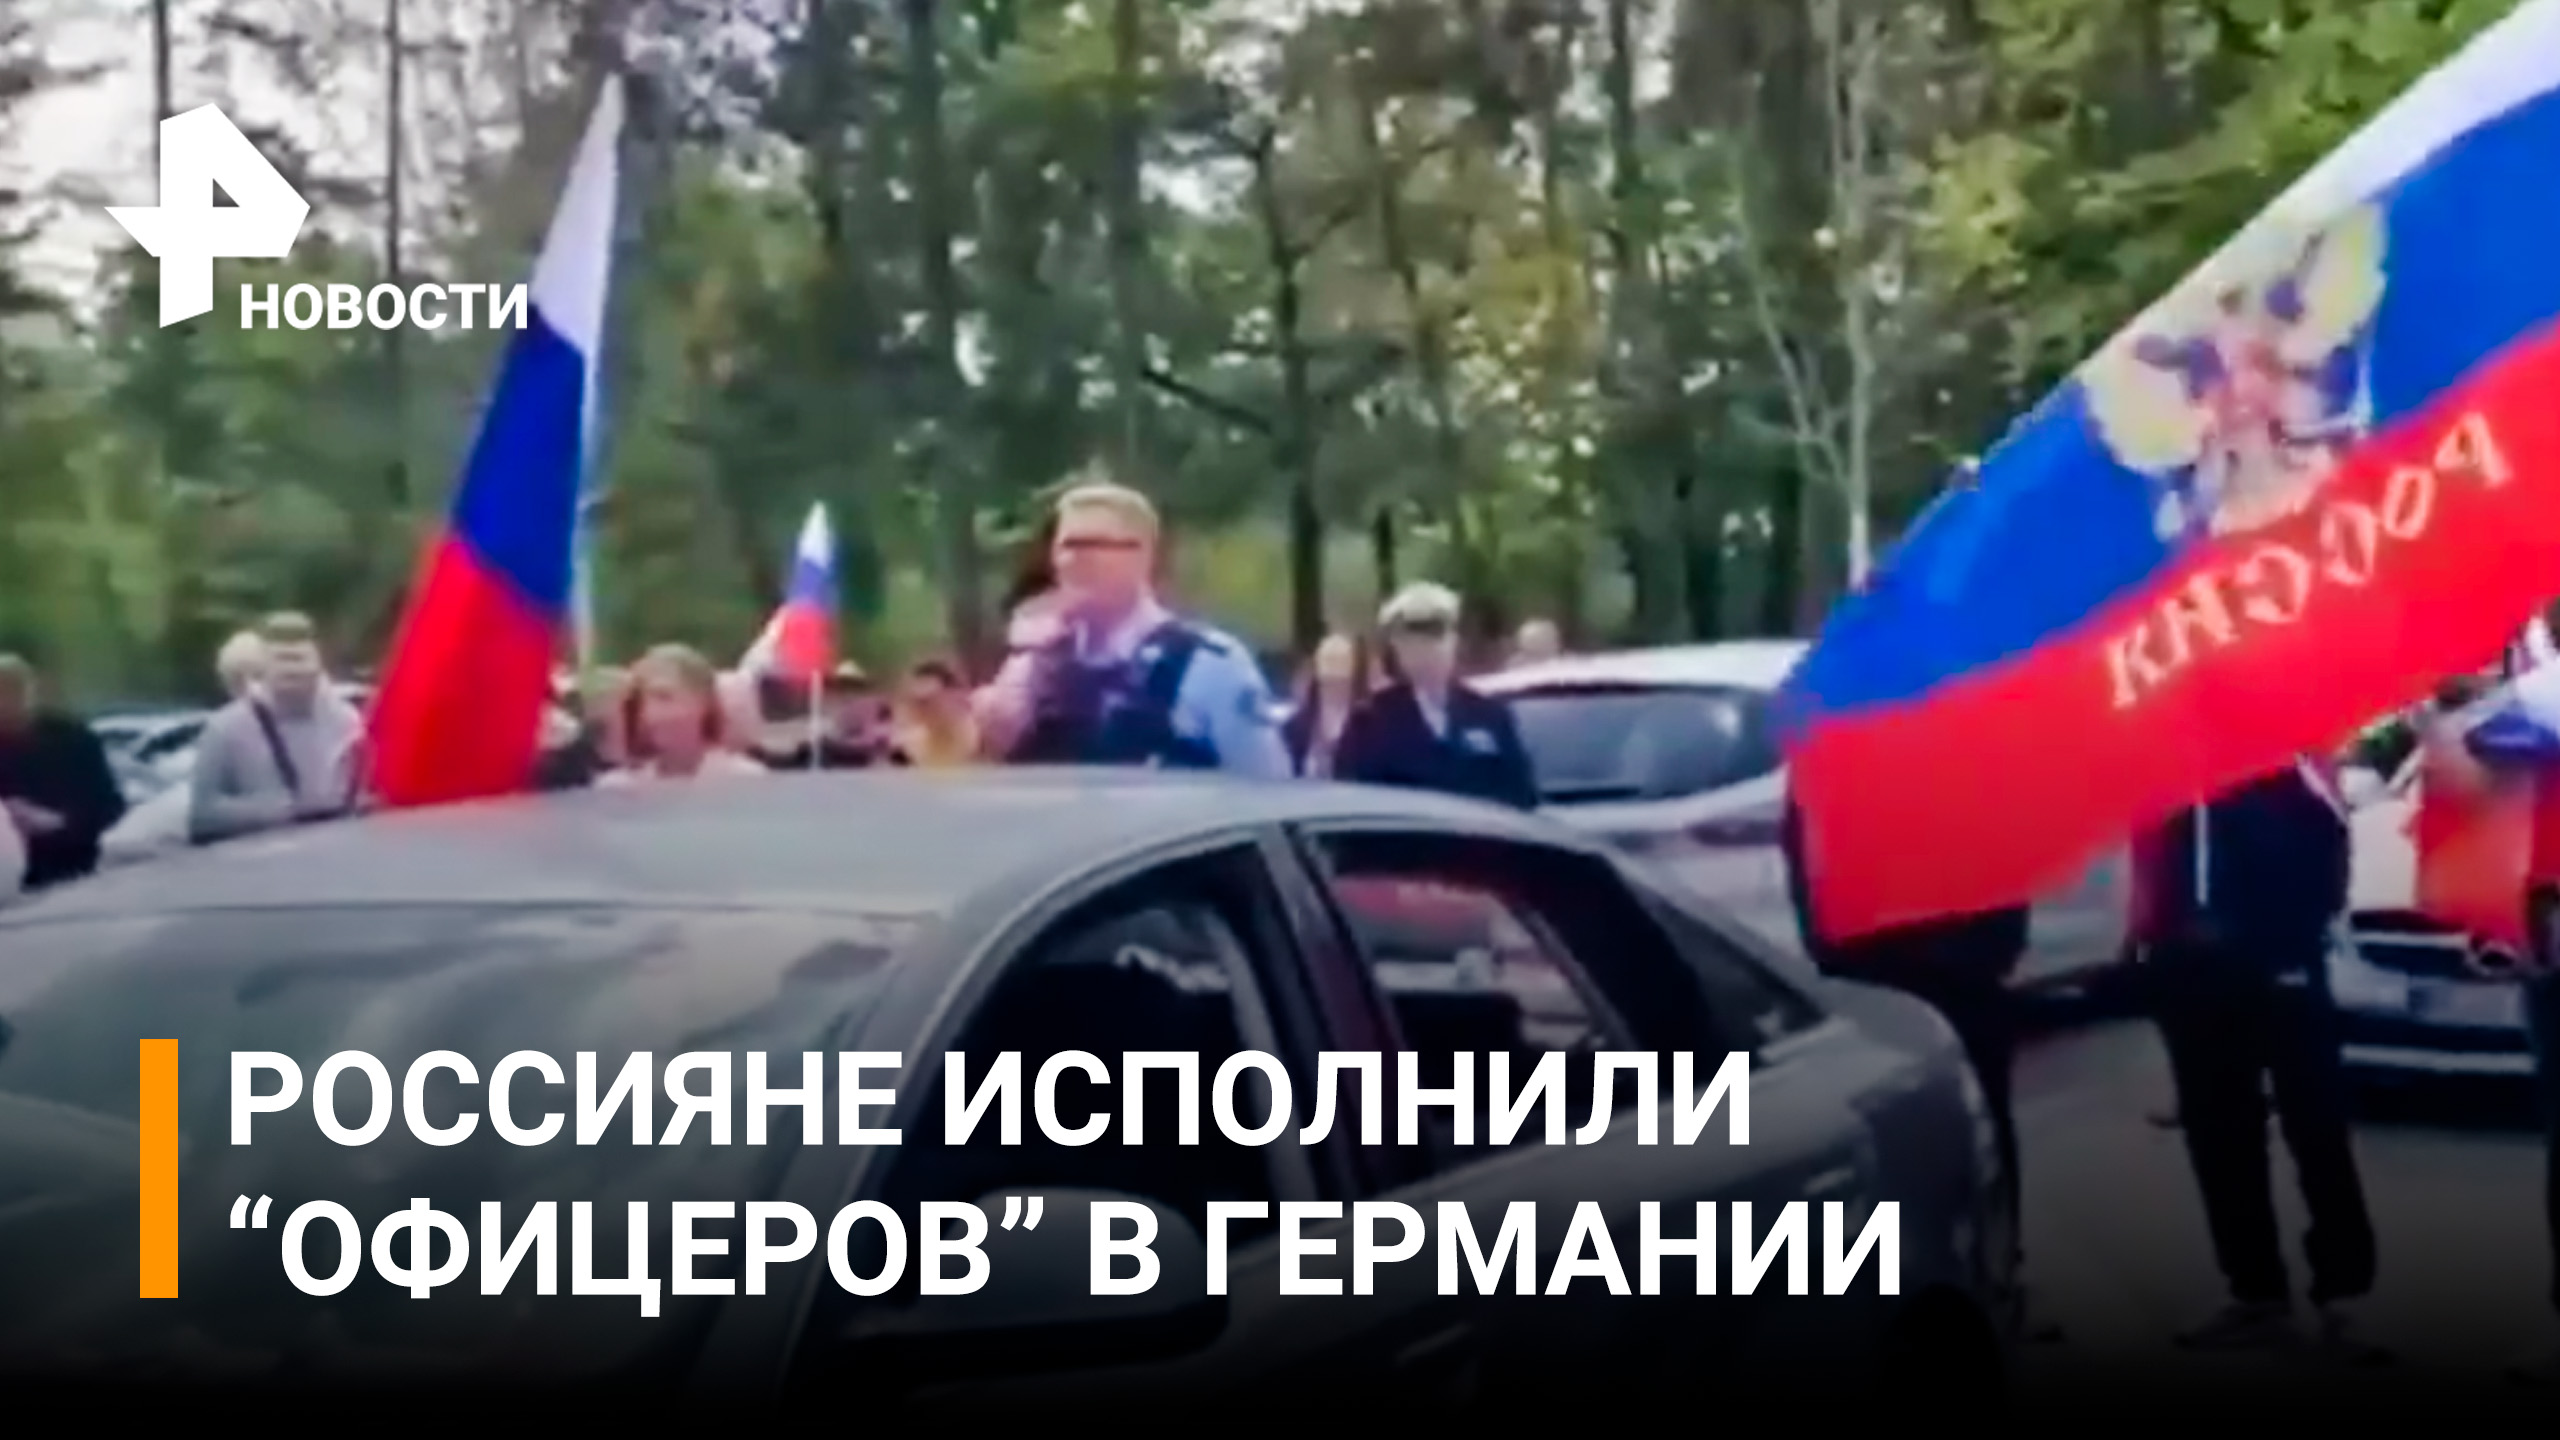 Нашу песню не задушишь: россиян в Германии не стали задерживать за "Офицеров" на улице / РЕН Новости